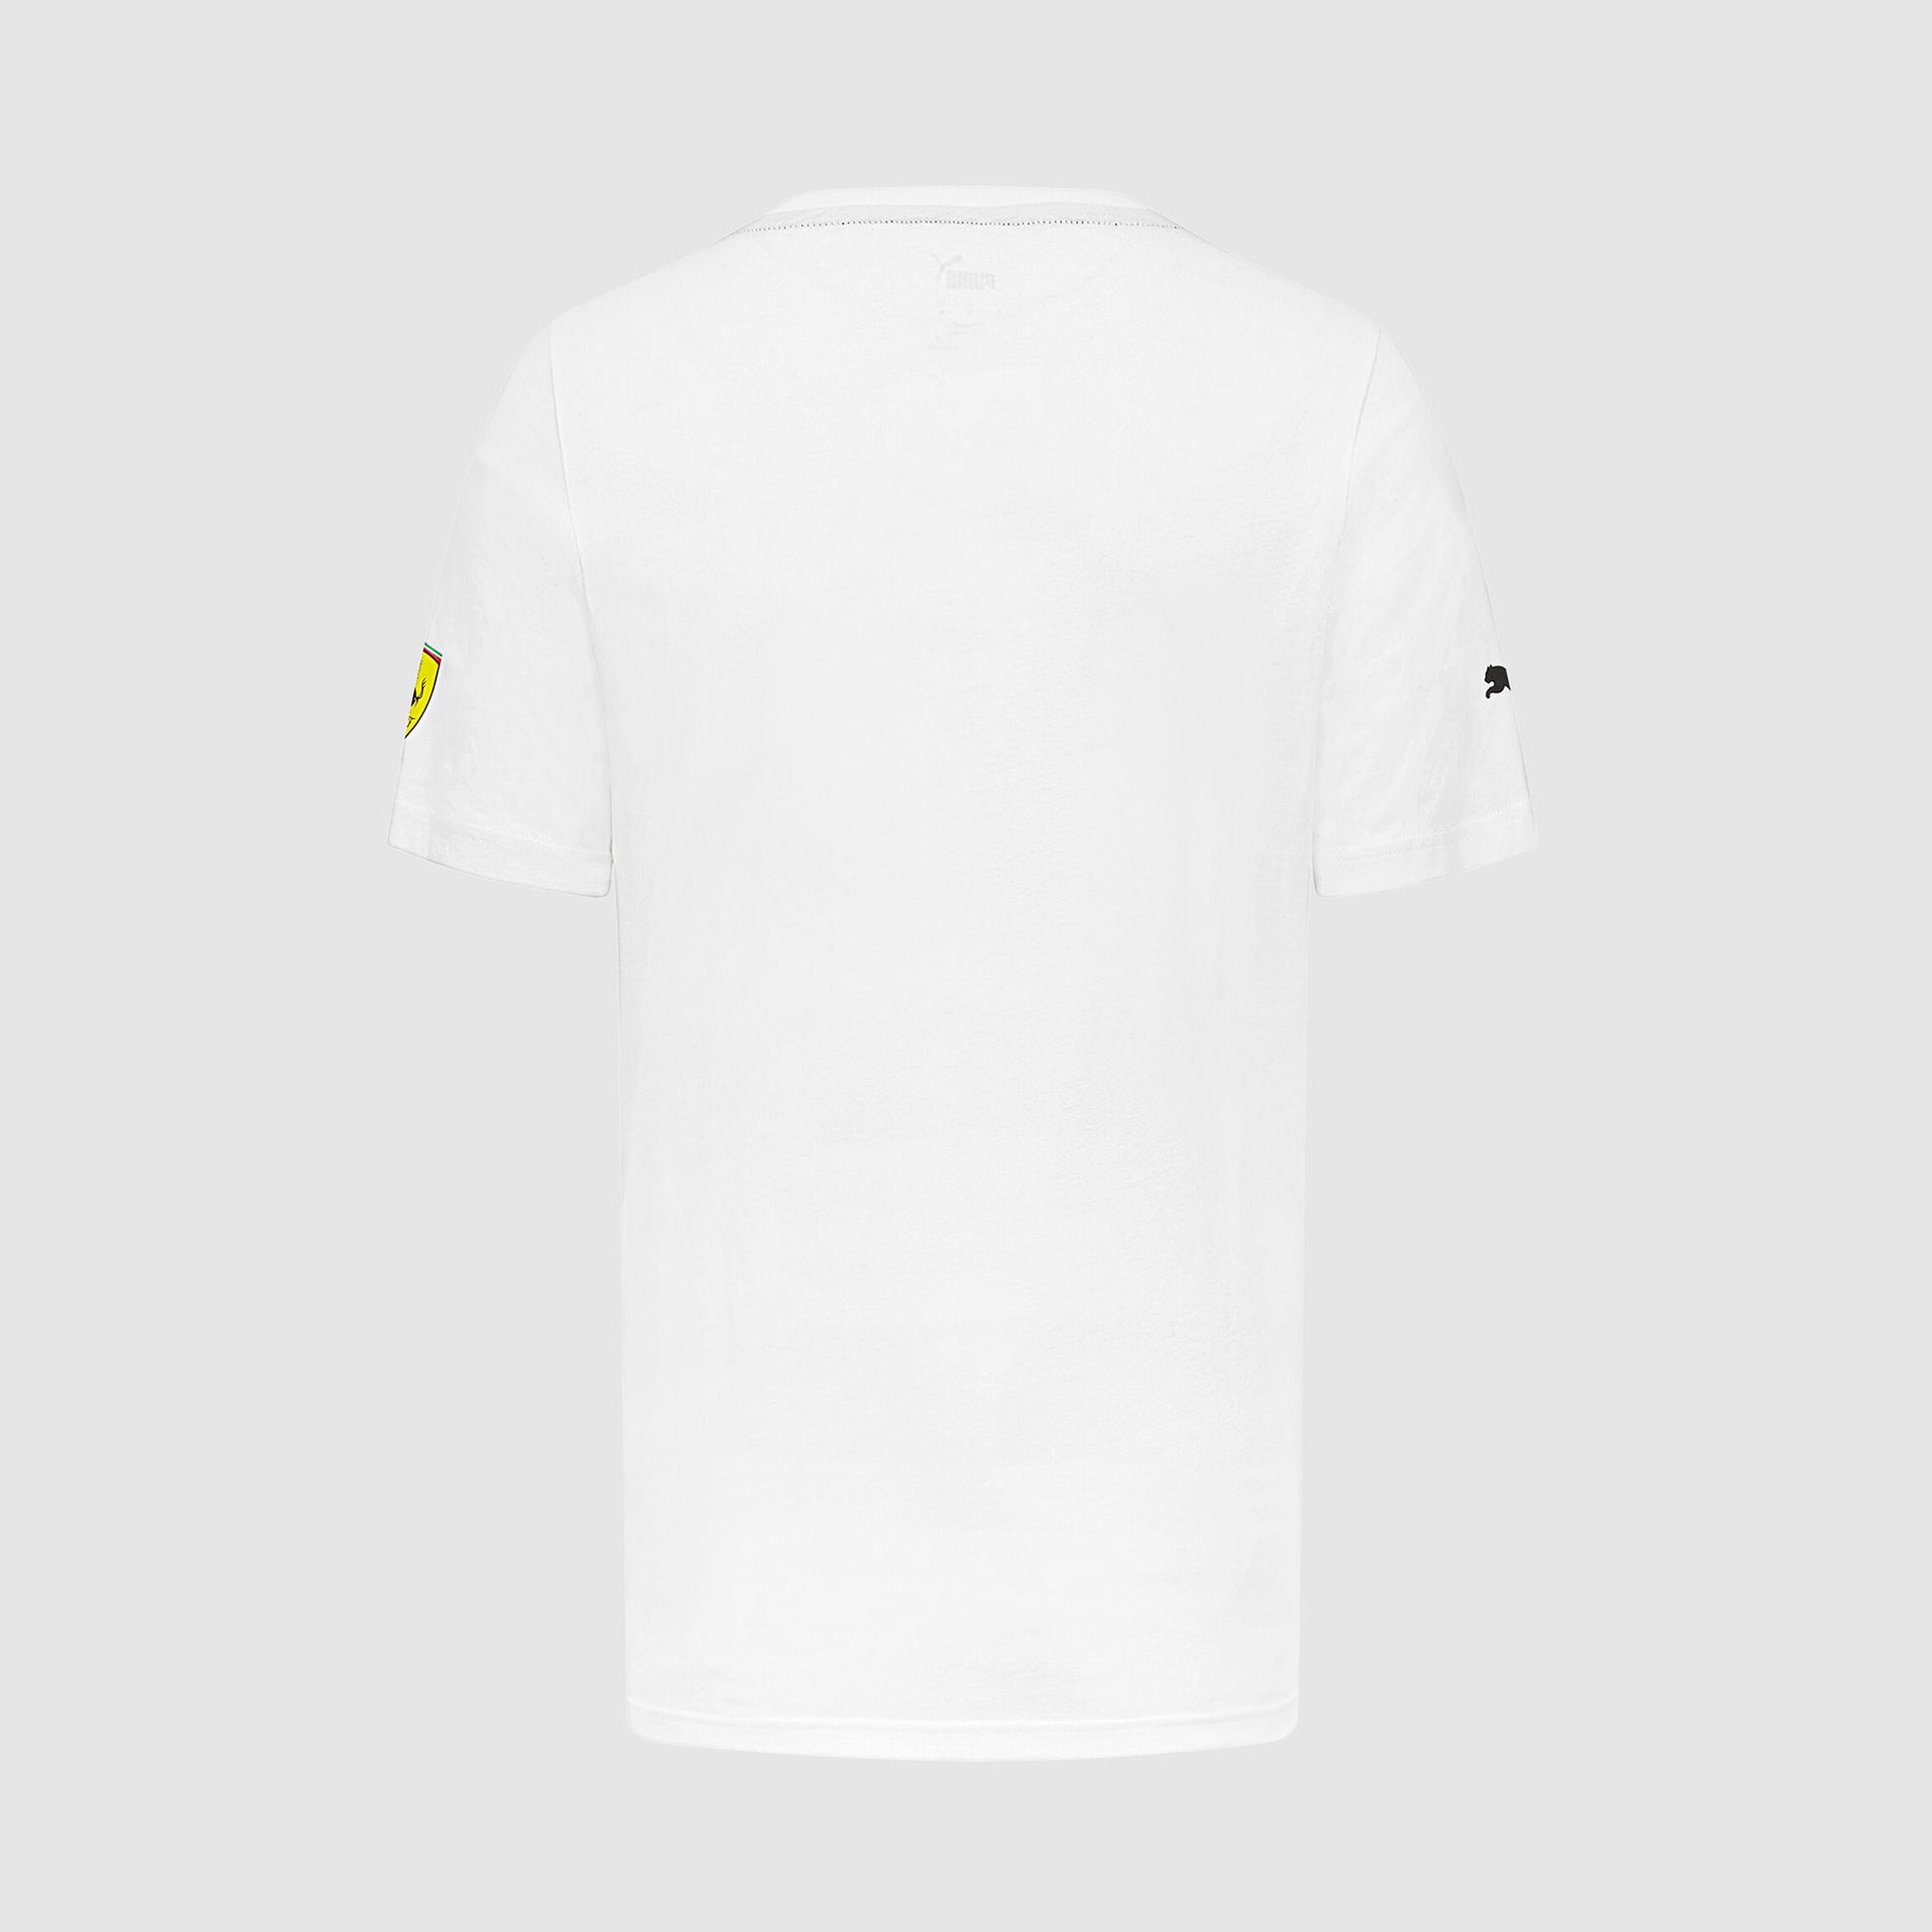 2023 Leclerc Team Ferrari F1 Men's T-shirt